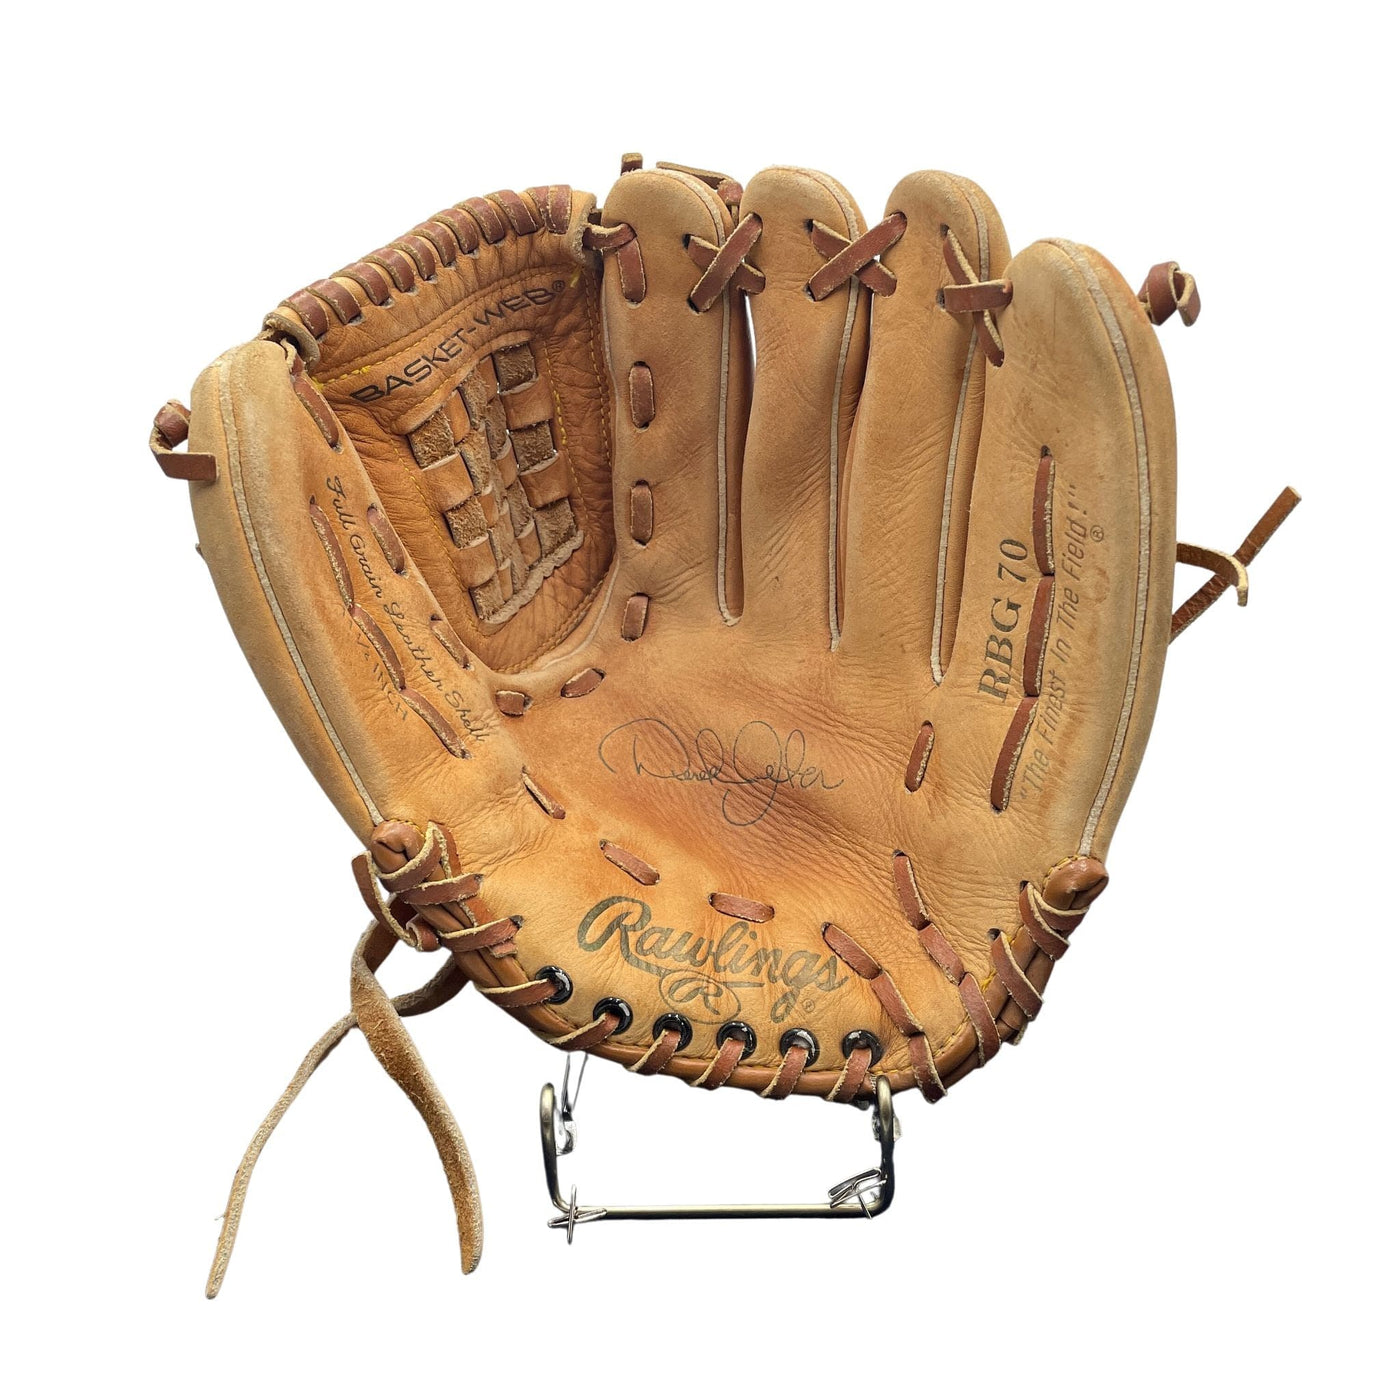 Derek Jeter Baseball Glove - G012